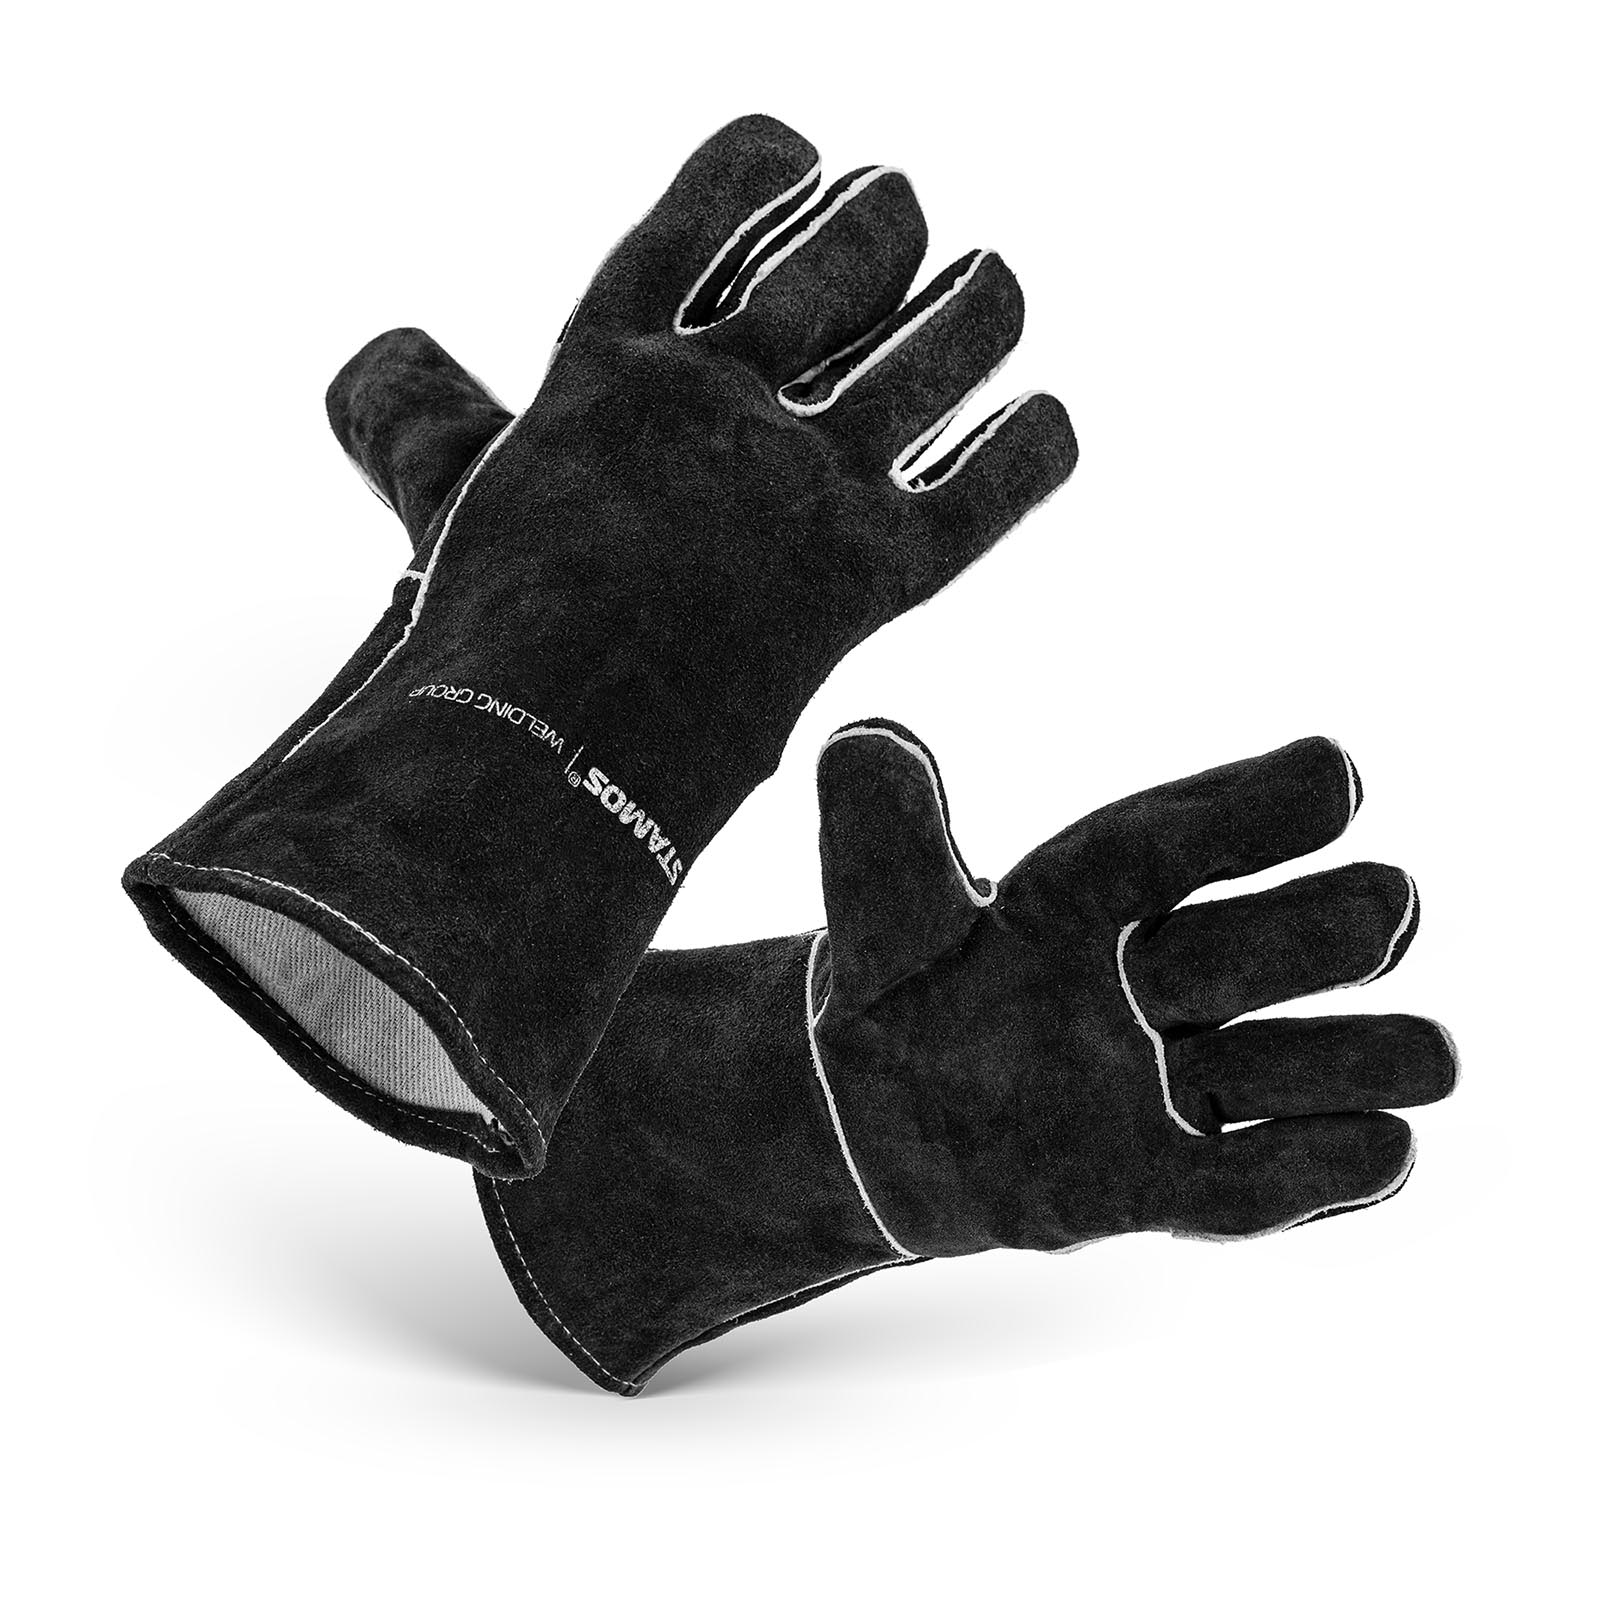 Welding Gloves - size XL - 32 x 18 cm